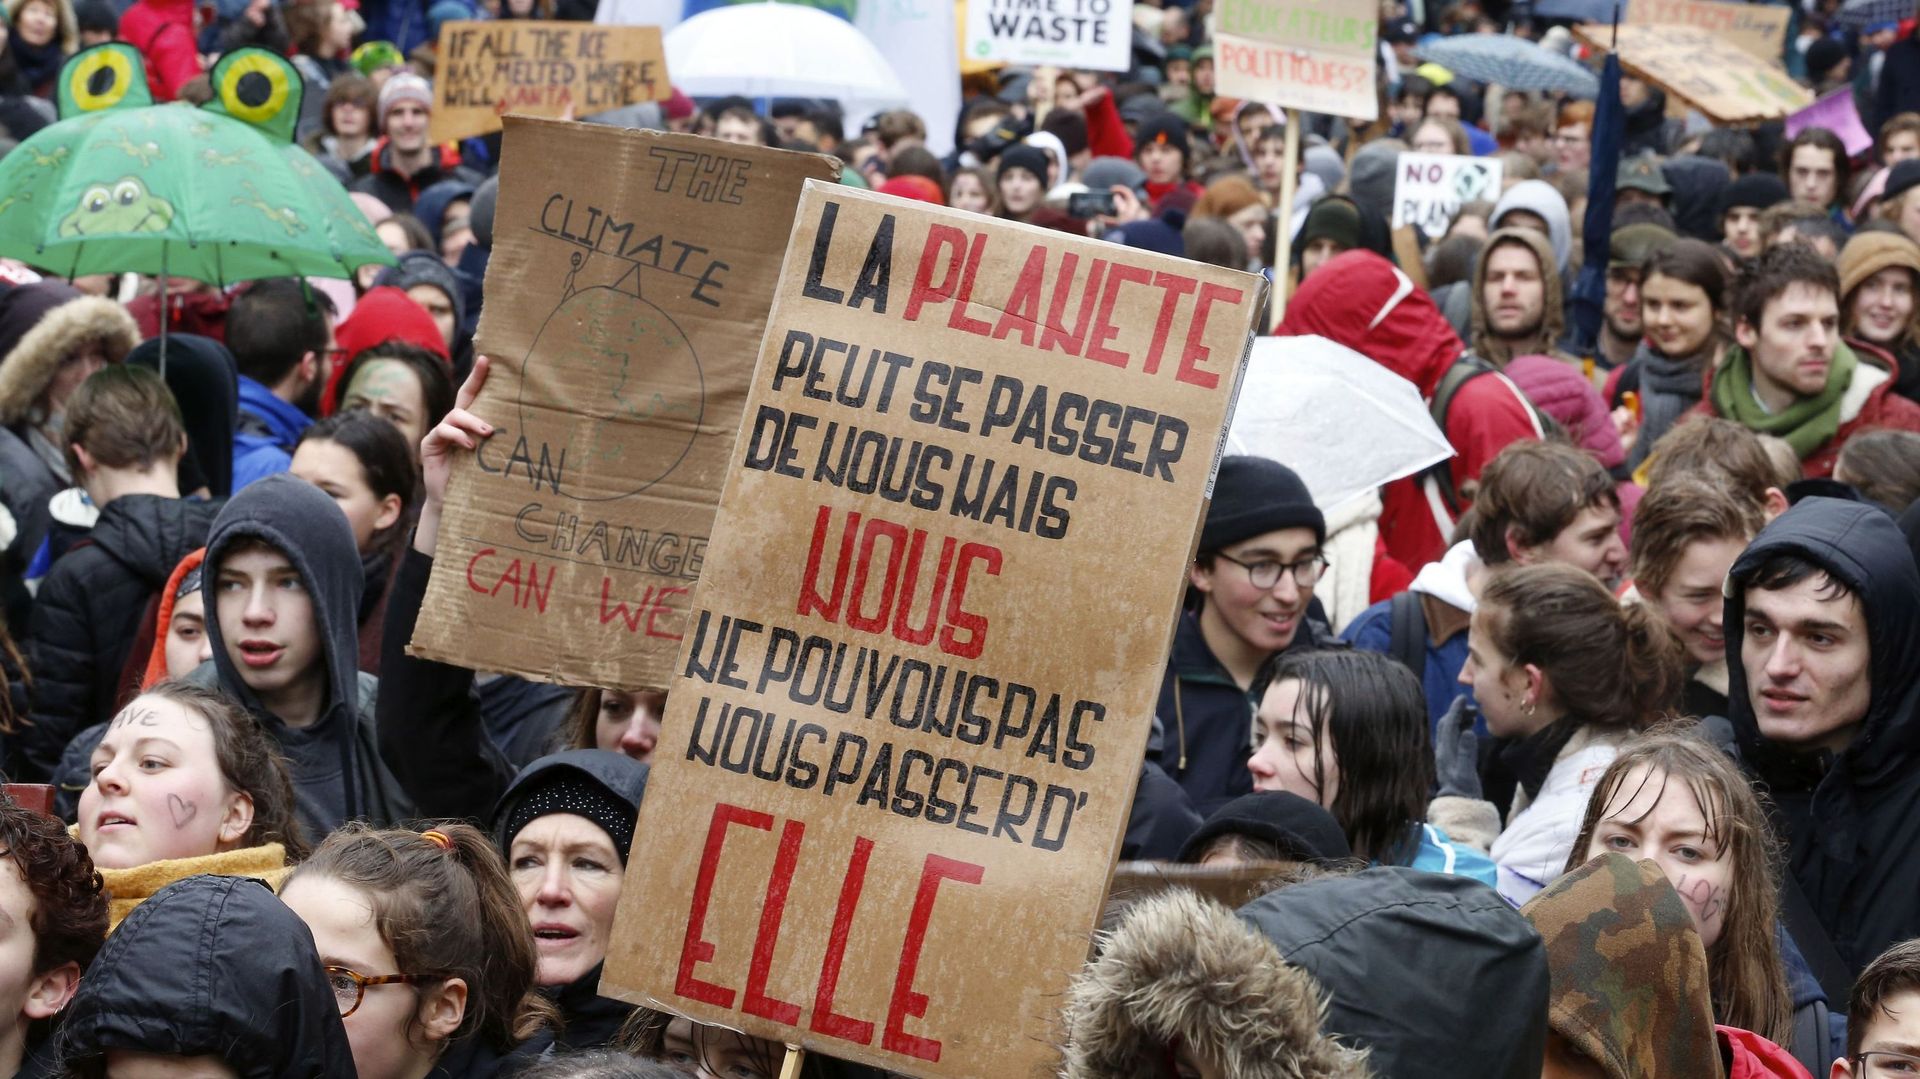 Marche pour le climat: "le mouvement est maintenant instoppable" selon Greenpeace